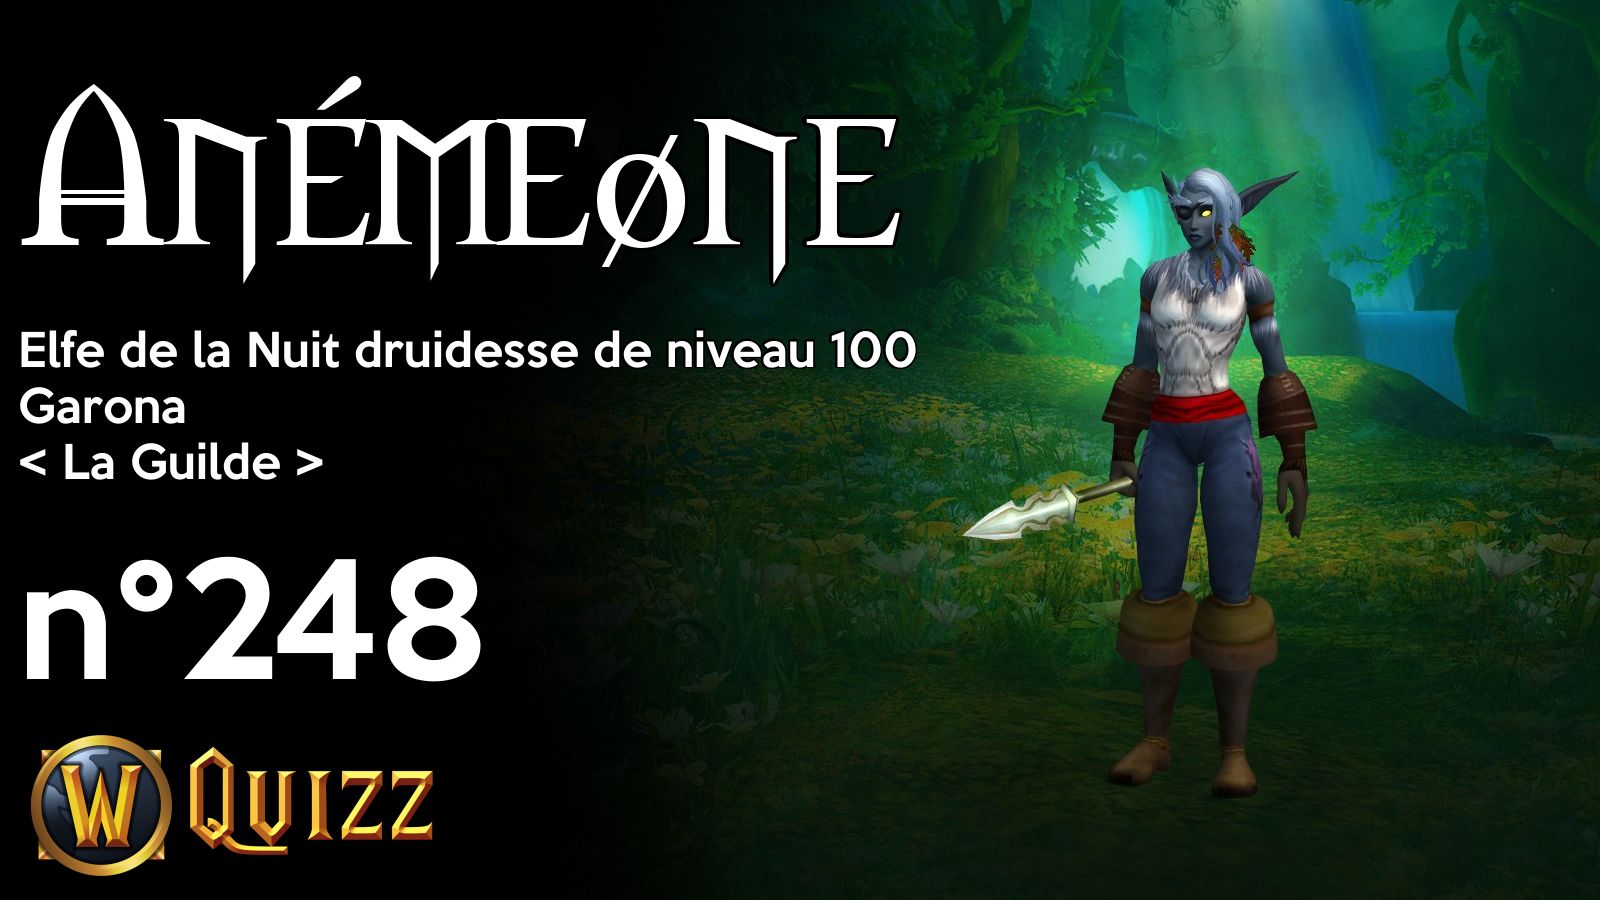 Anémeøne, Elfe de la Nuit druidesse de niveau 100, Garona